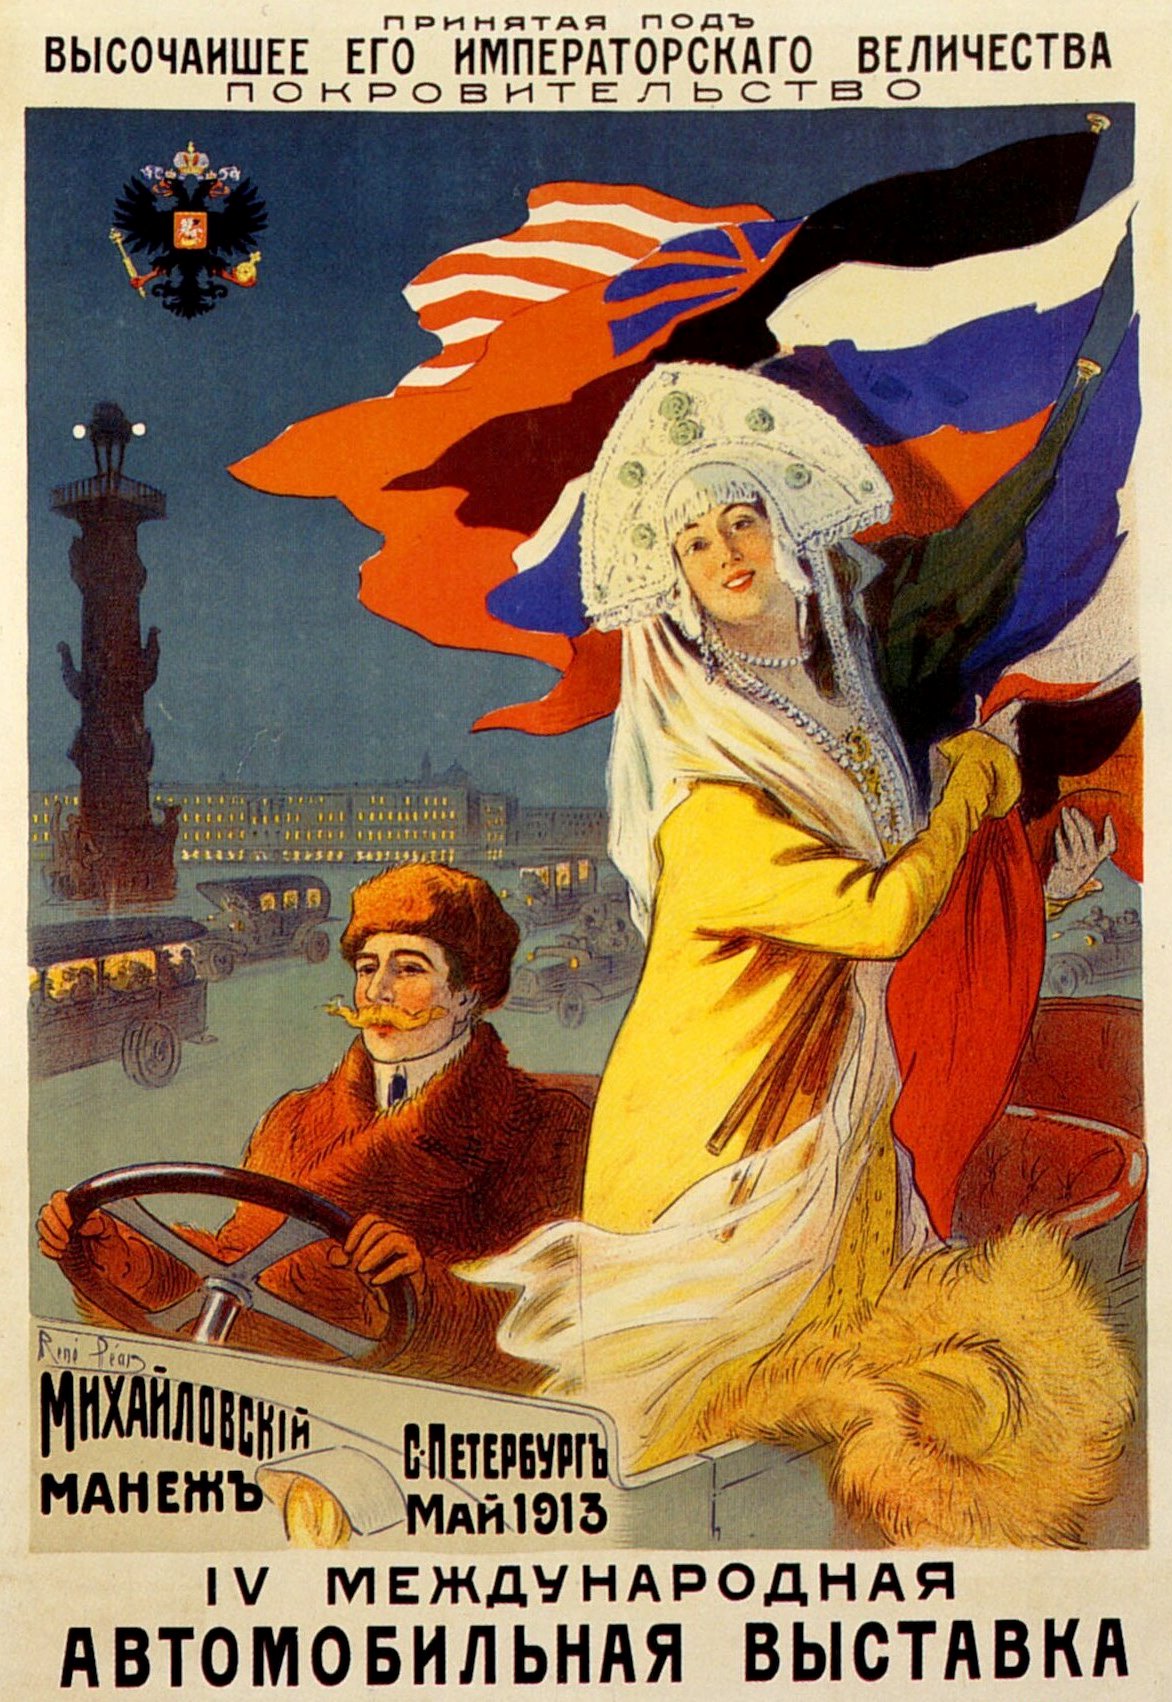 5 мая 1913 года состоялось торжественное открытие IV Международной автомобильной выставки в Санкт-Петербурге